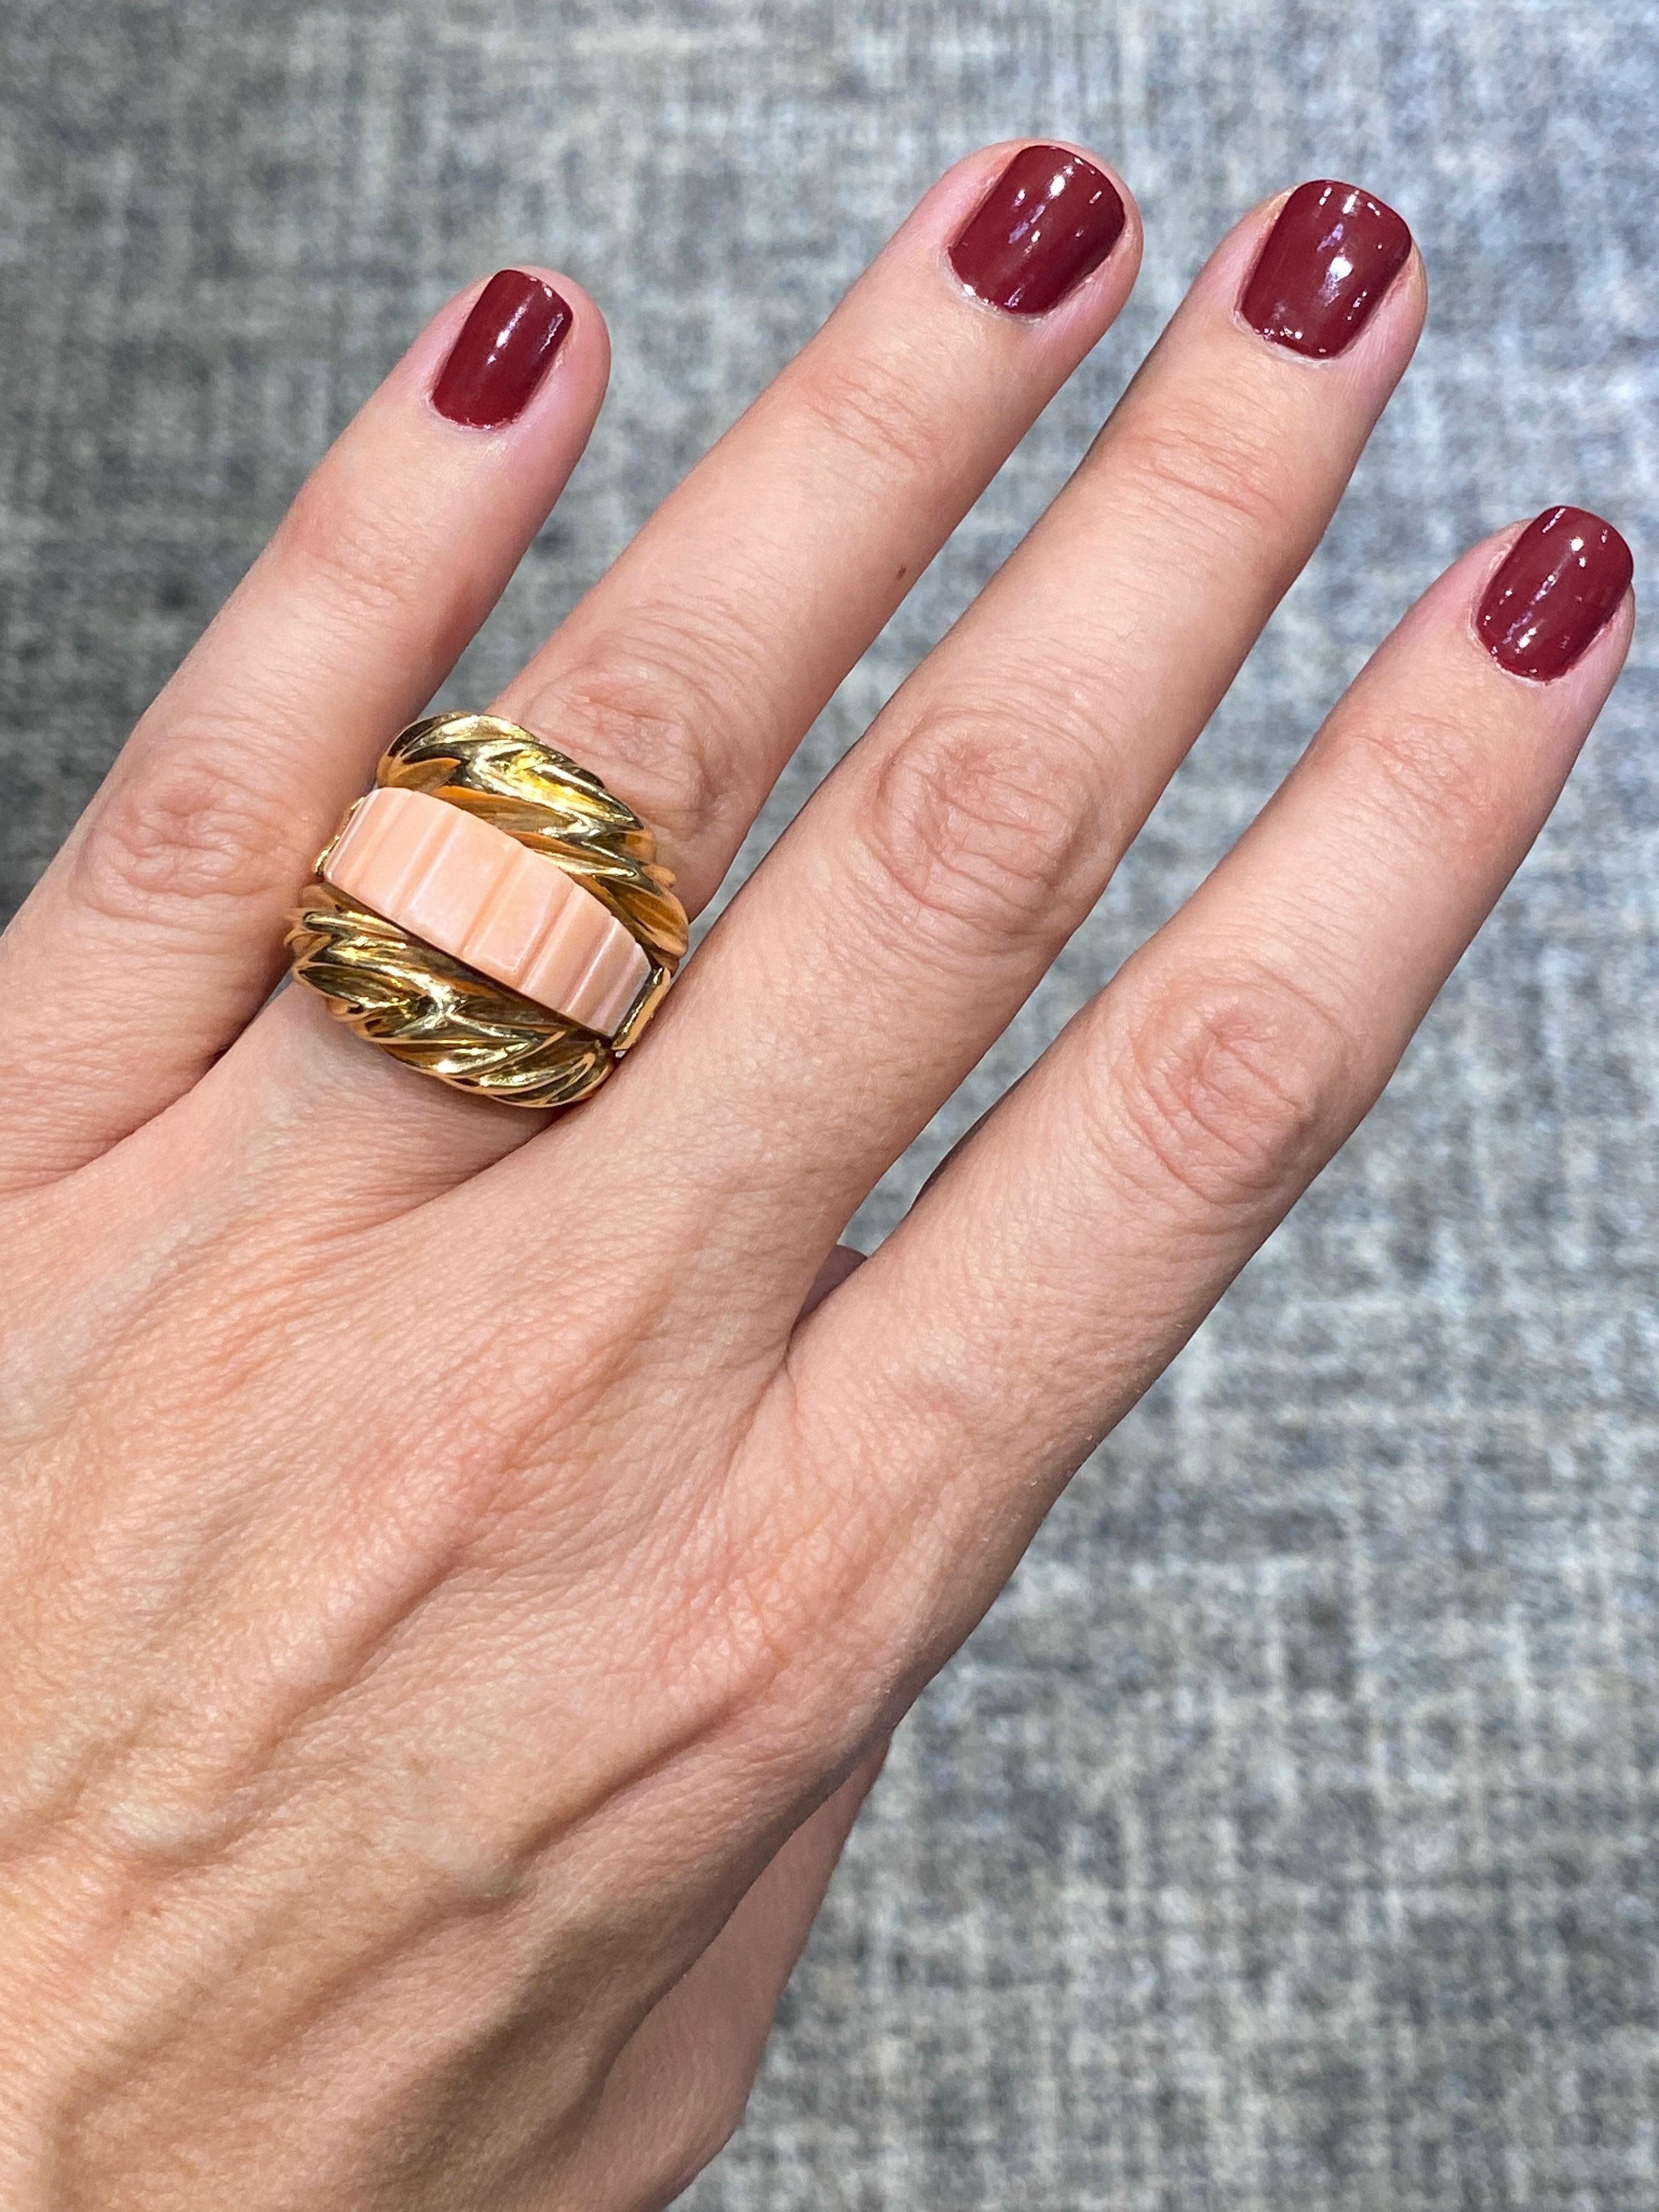 Dieser einzigartige Cocktailring von Fred Paris aus 18 Karat Gold, Koralle und Diamanten zeigt eine einzelne geschnitzte rosa Koralle. Er ist ein Statement-Ring und kann sowohl tagsüber als auch zu einer Abendgarderobe getragen werden. Dieses